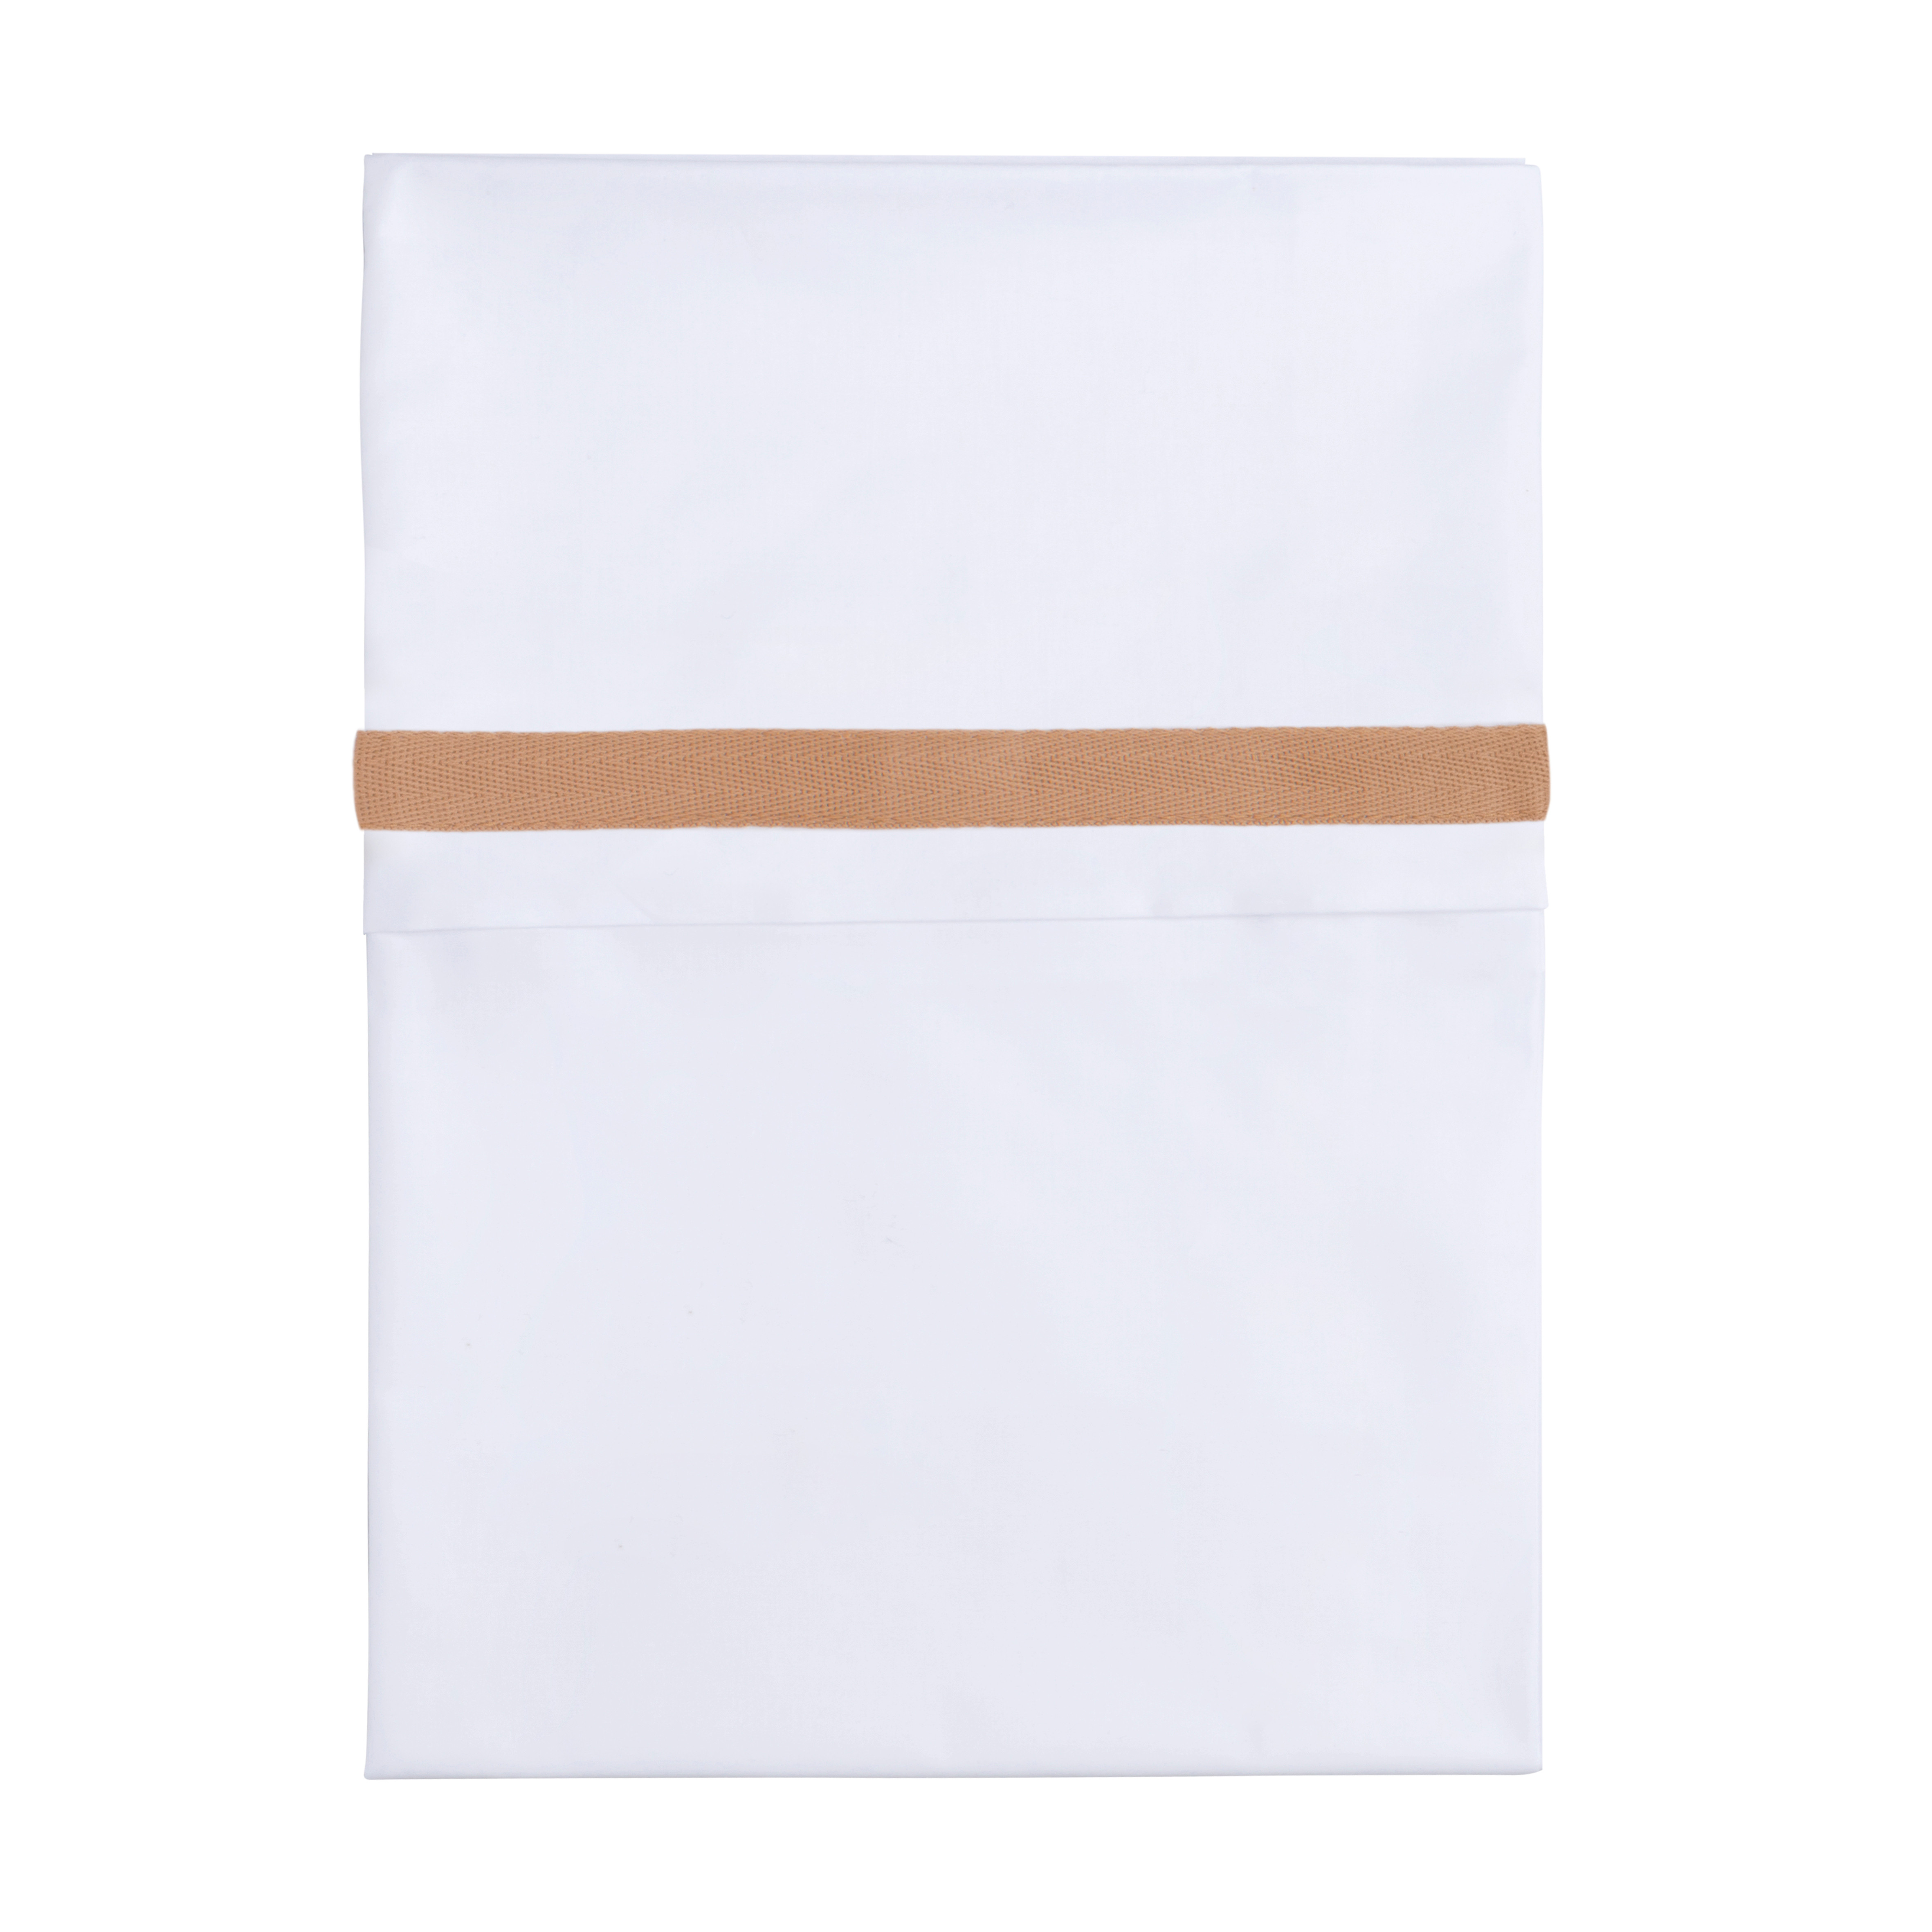 Cot sheet woven ribbon caramel/white